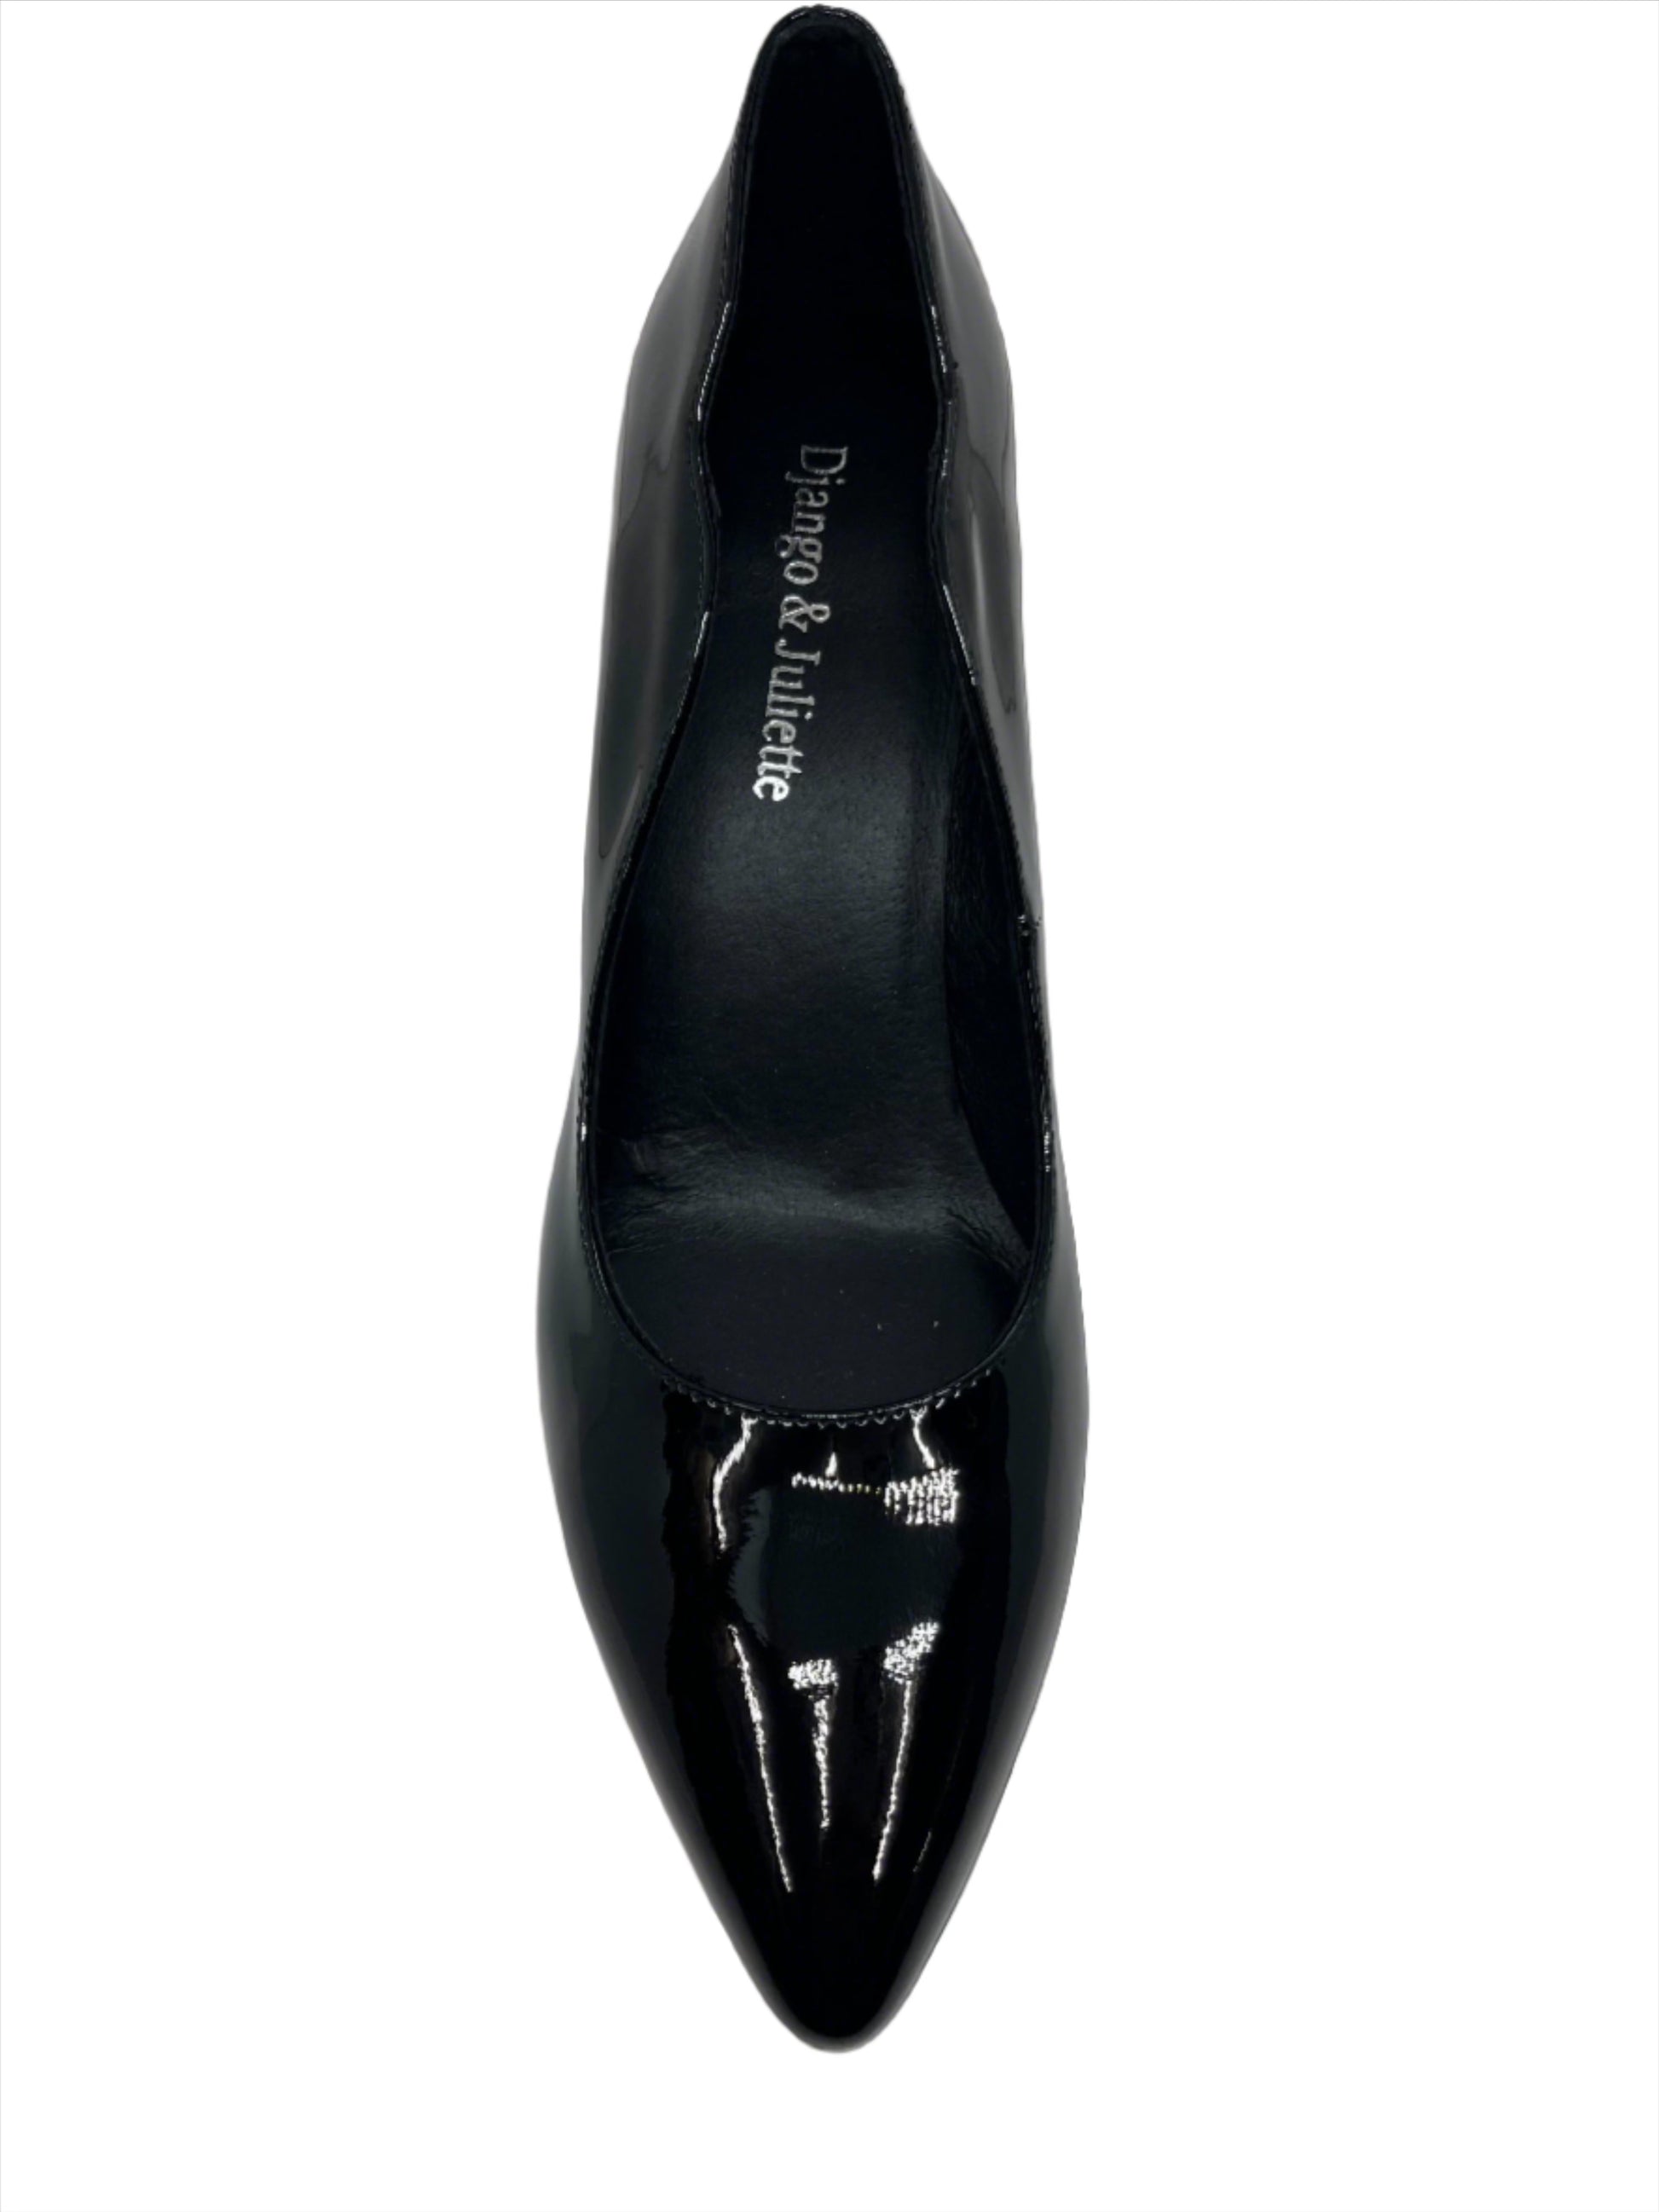 HULIE PUMP -  - womens footwear - Stomp Shoes Darwin